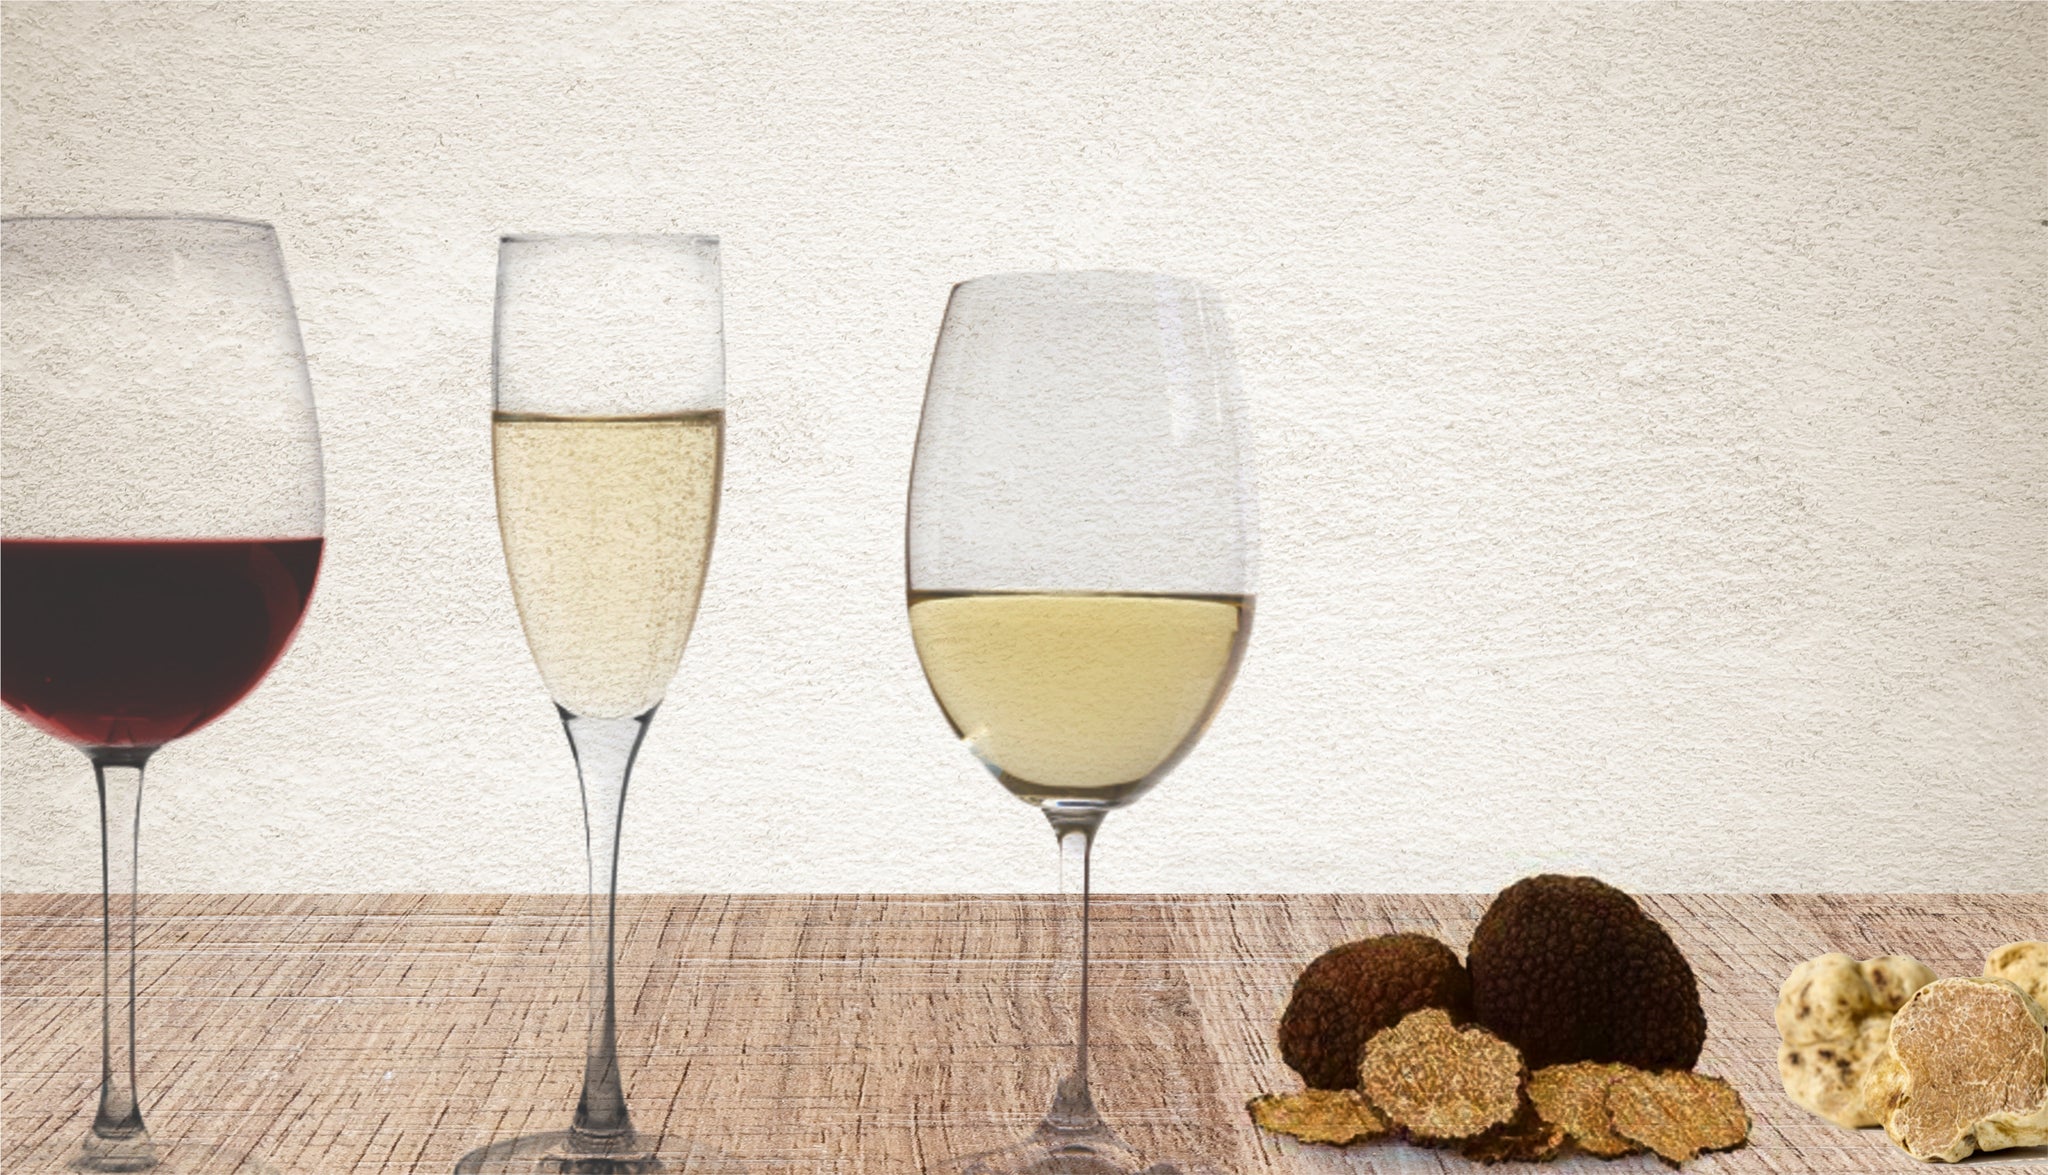 Wine pairing with truffles